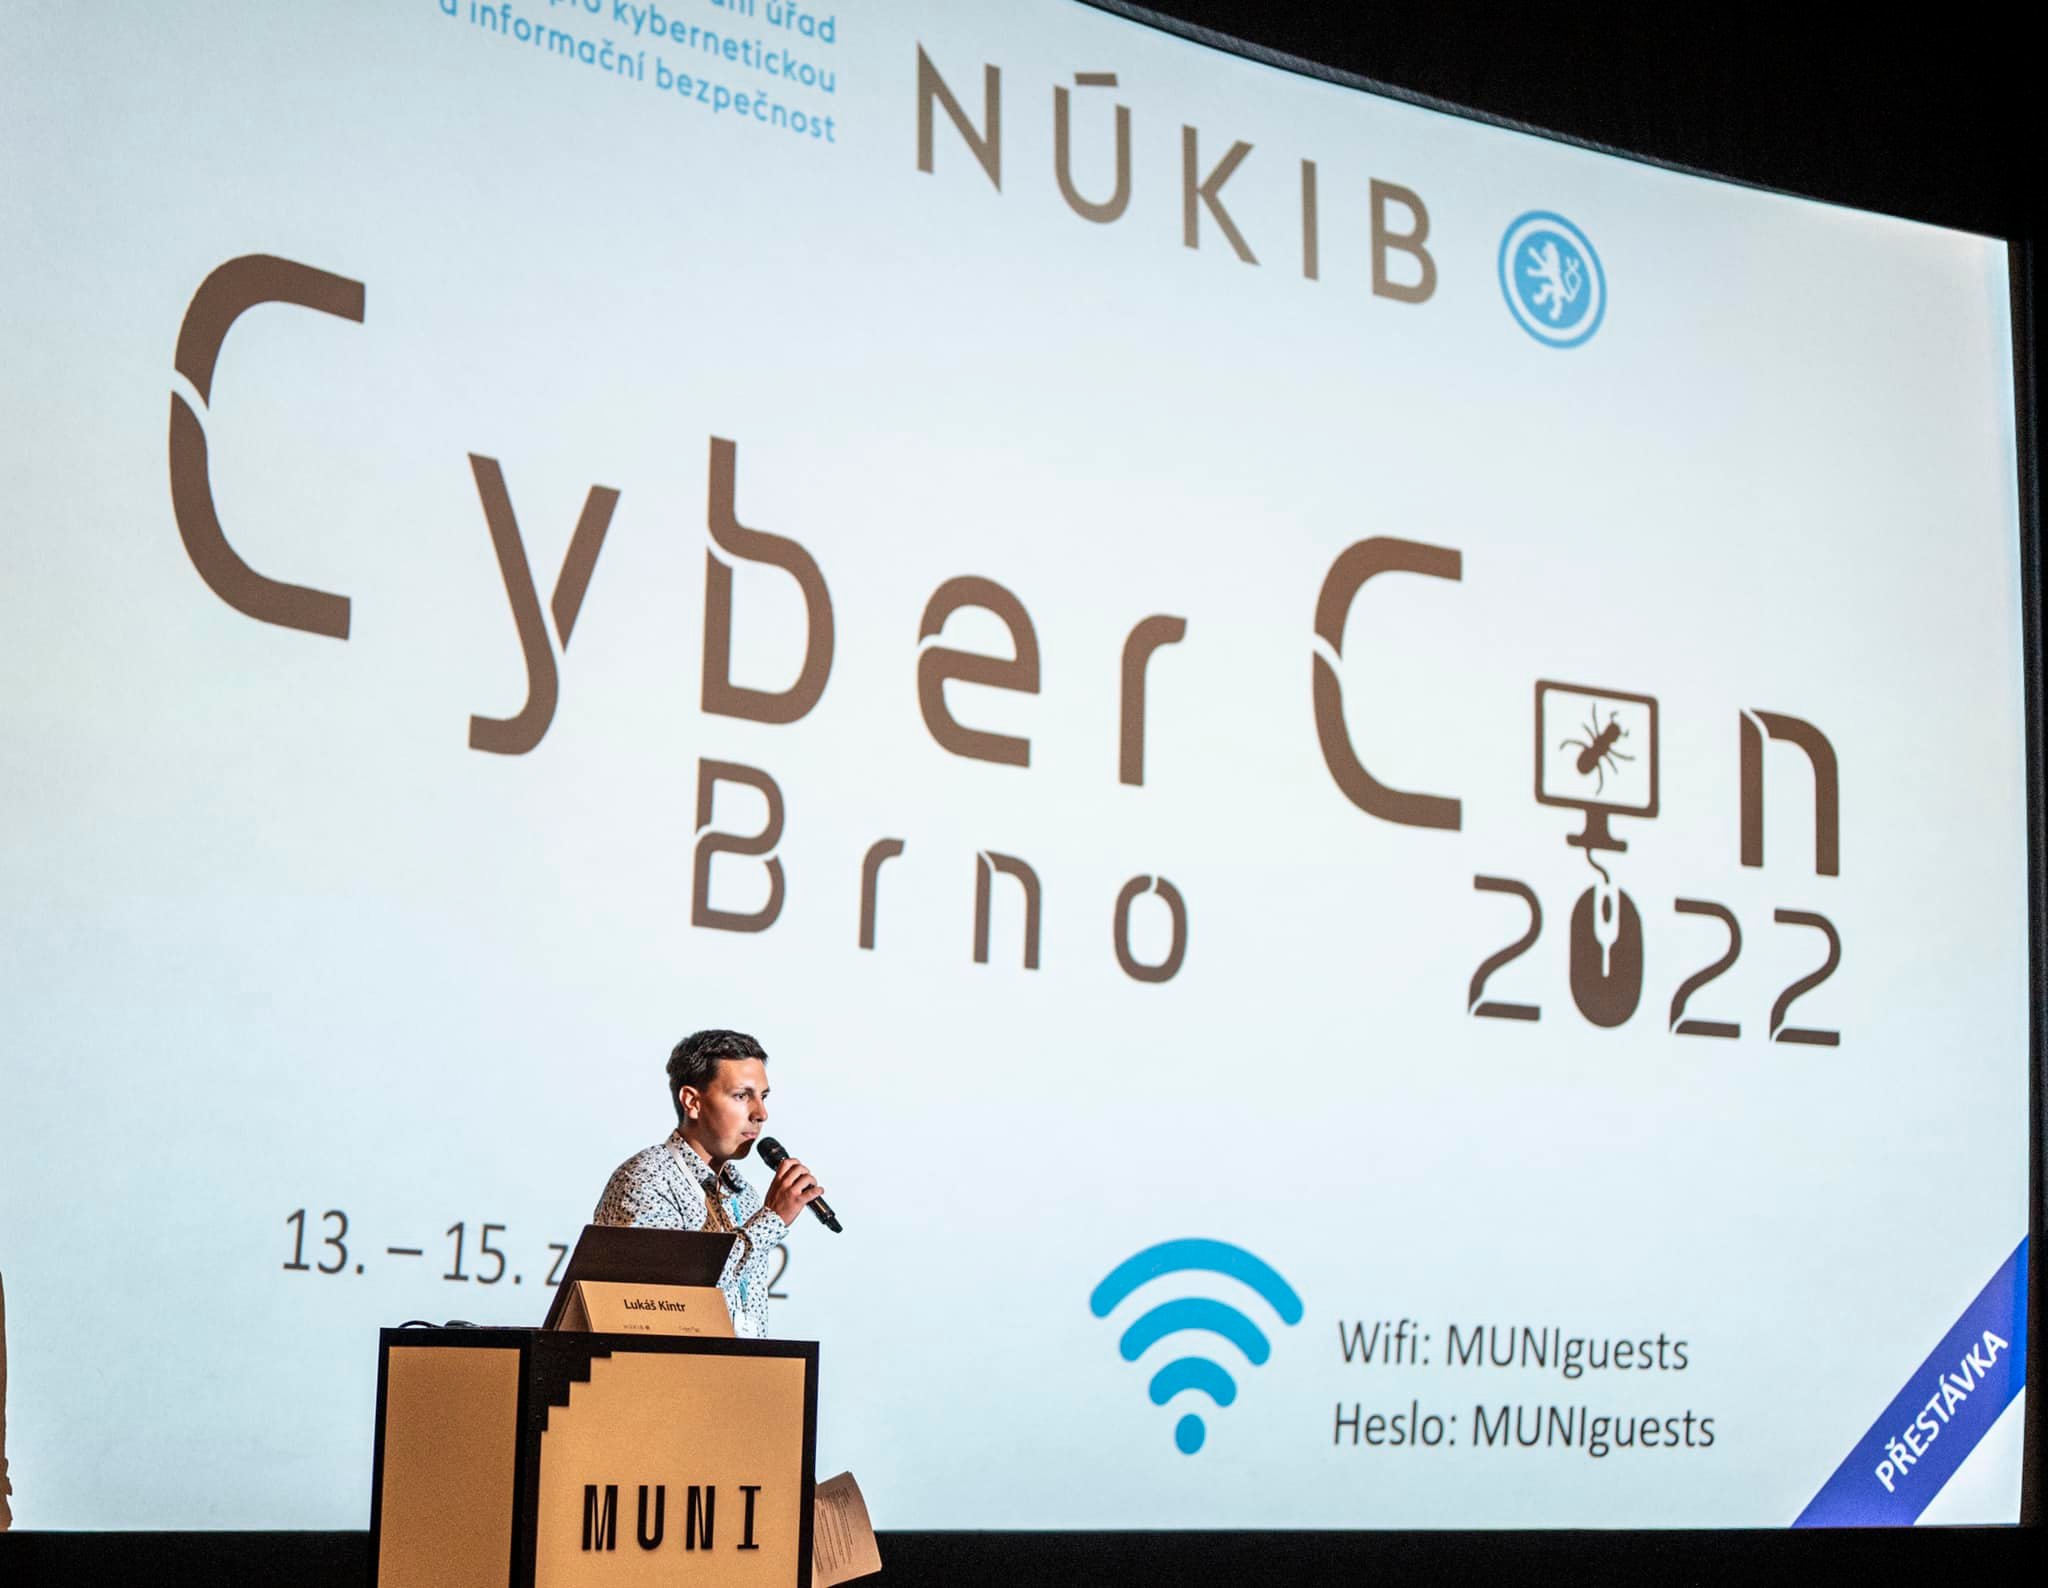 Workshopy, přednášky, diskuse a setkání - to vše a ještě více přinesl CyberCon 2022